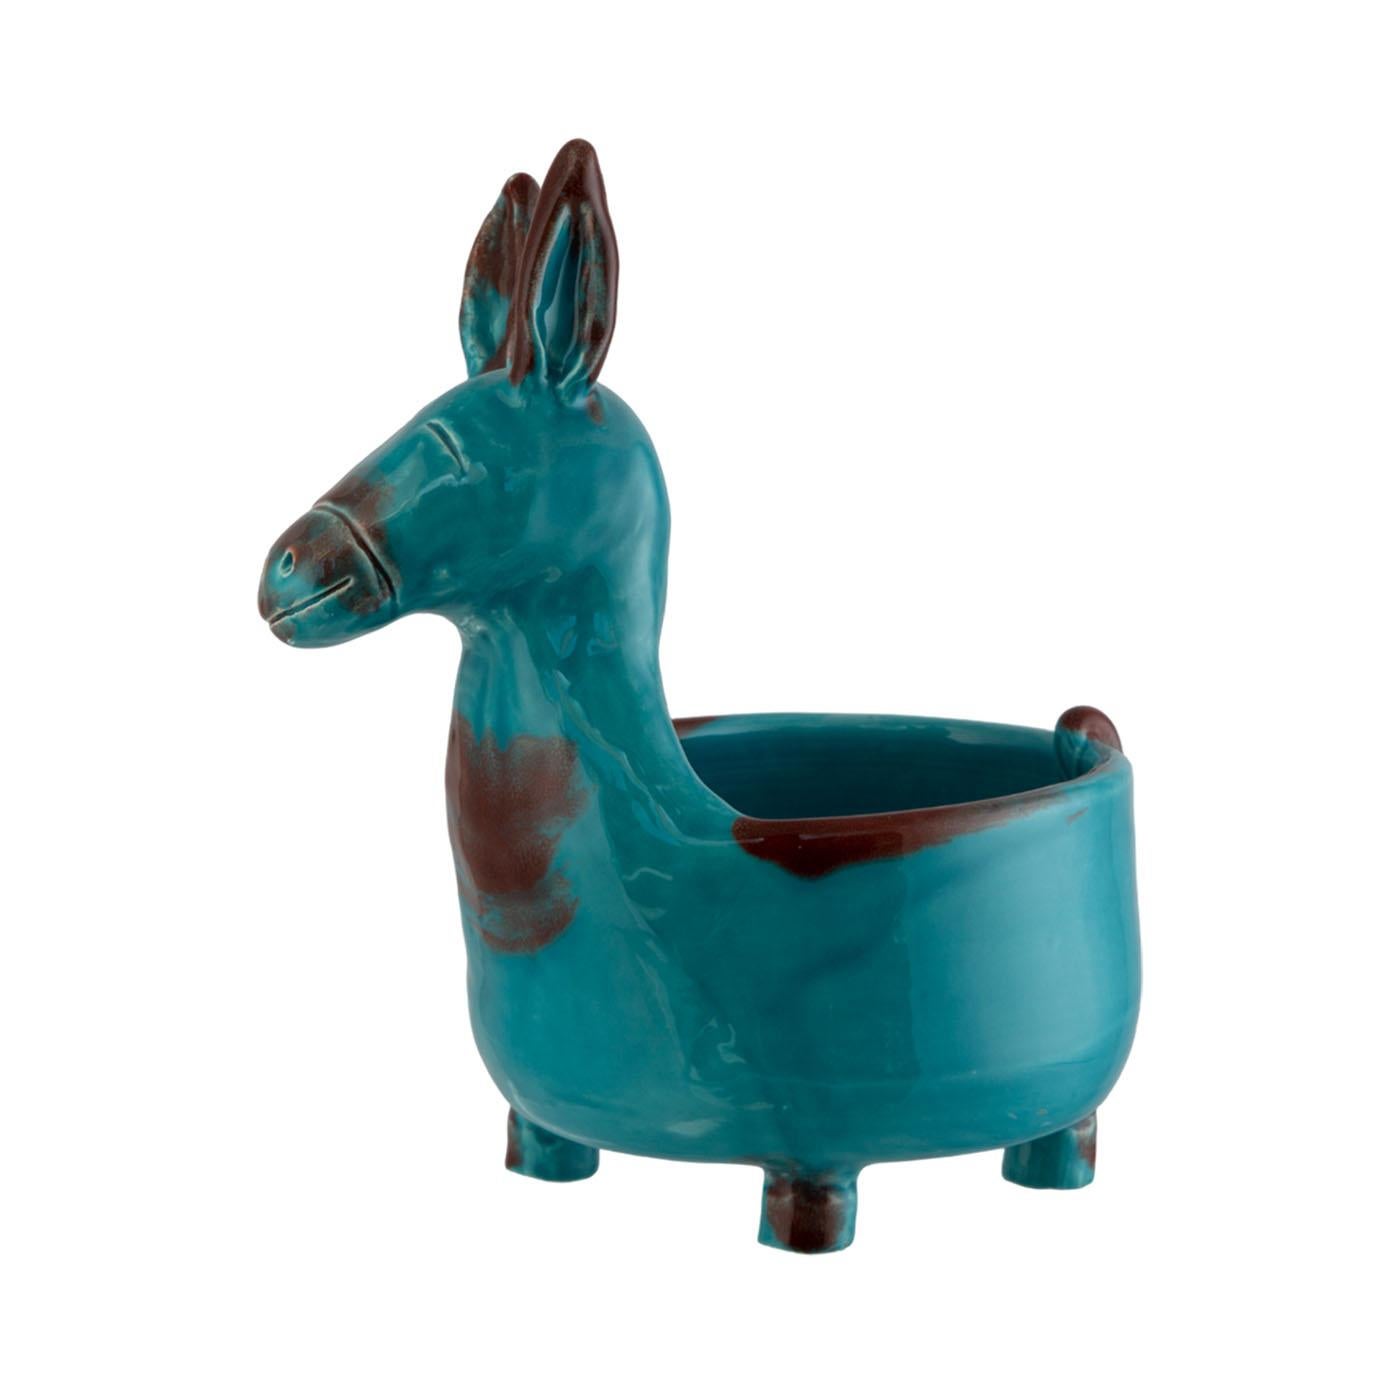 Italian The Little Donkey Vases For Sale